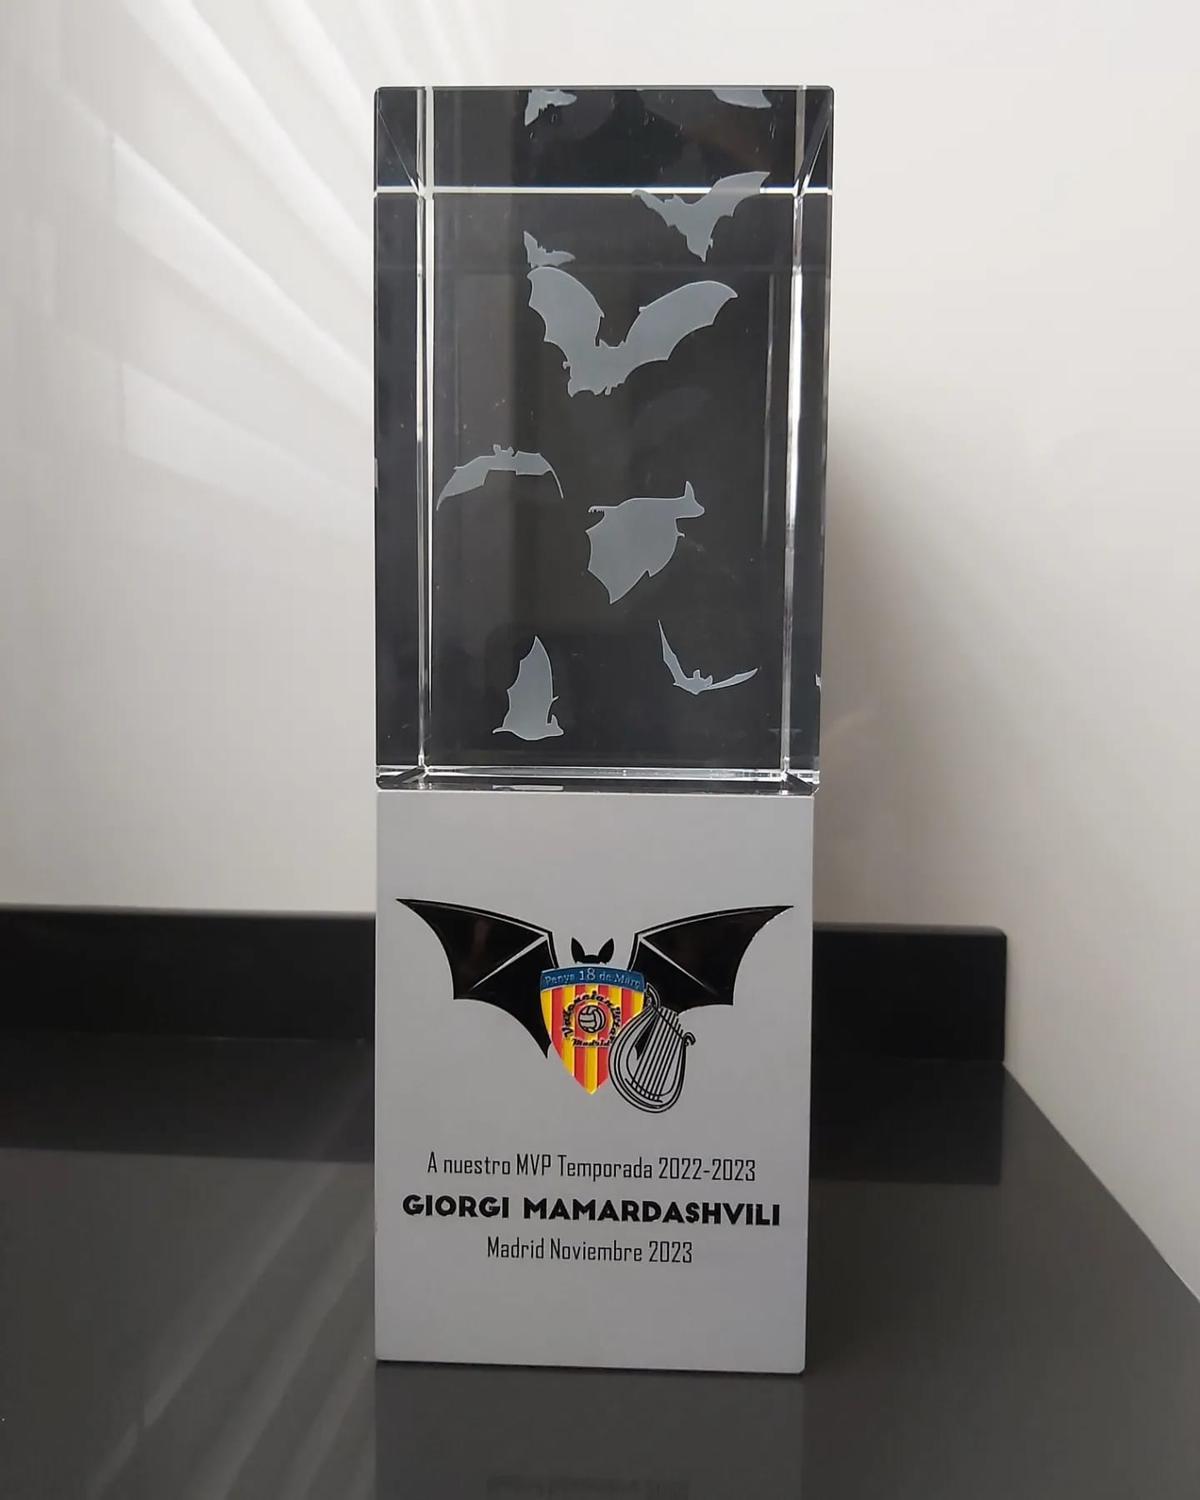 Imagen del trofeo que iban a entregar a Mamardashvili